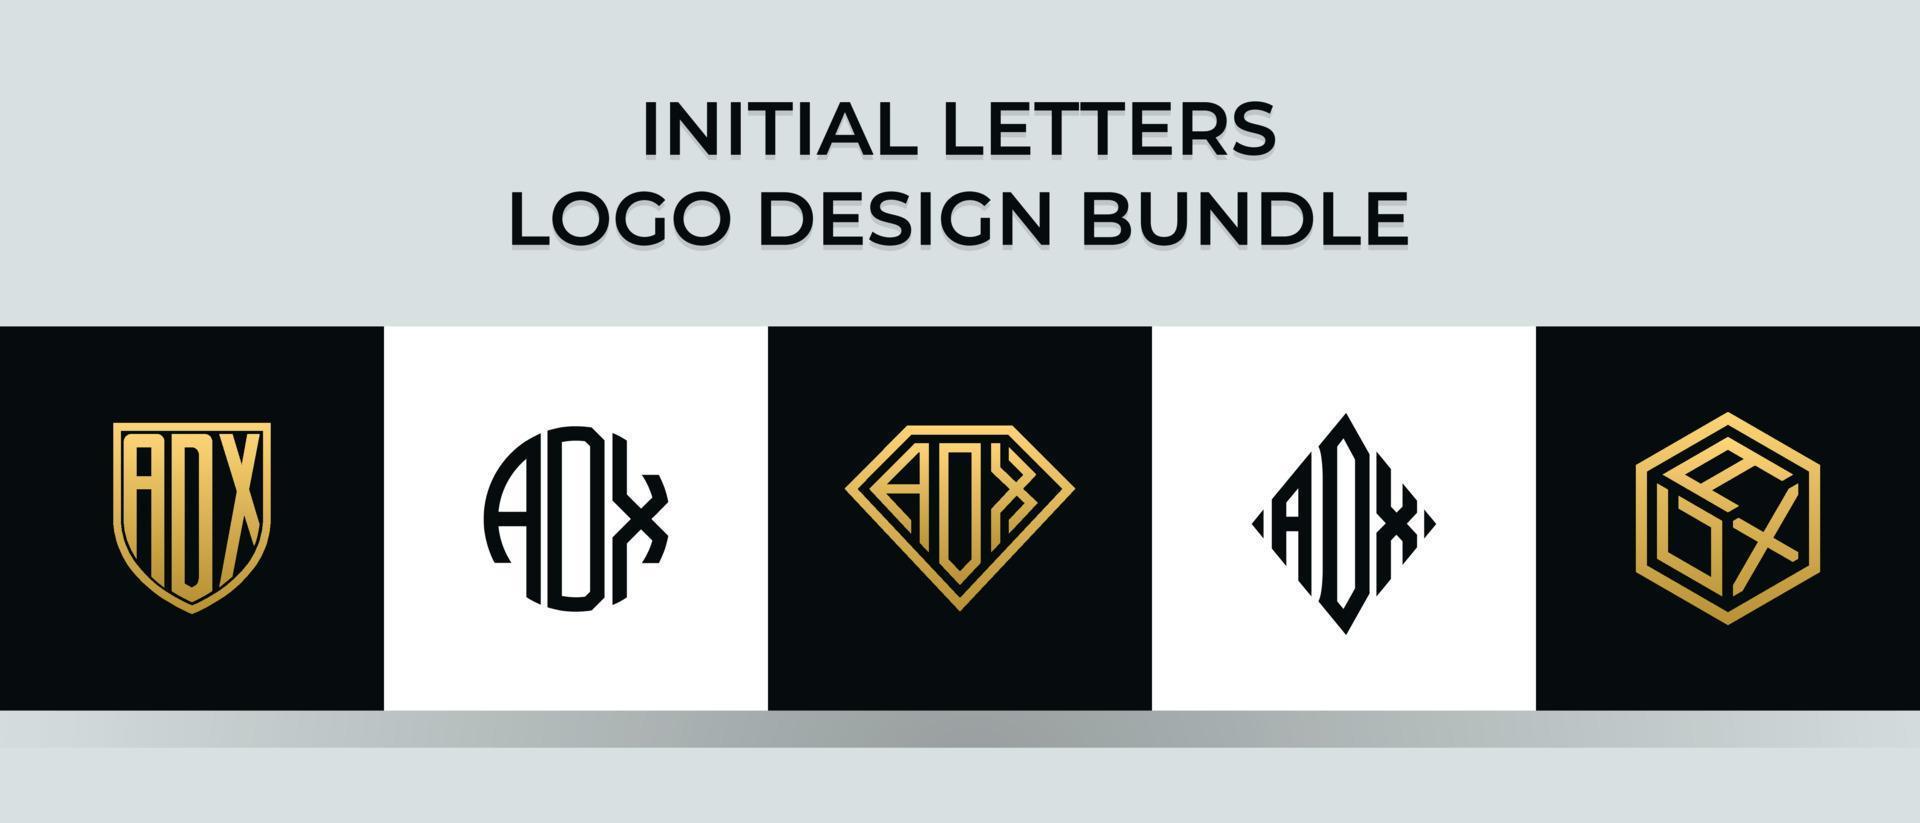 Initial letters ADX logo designs Bundle vector